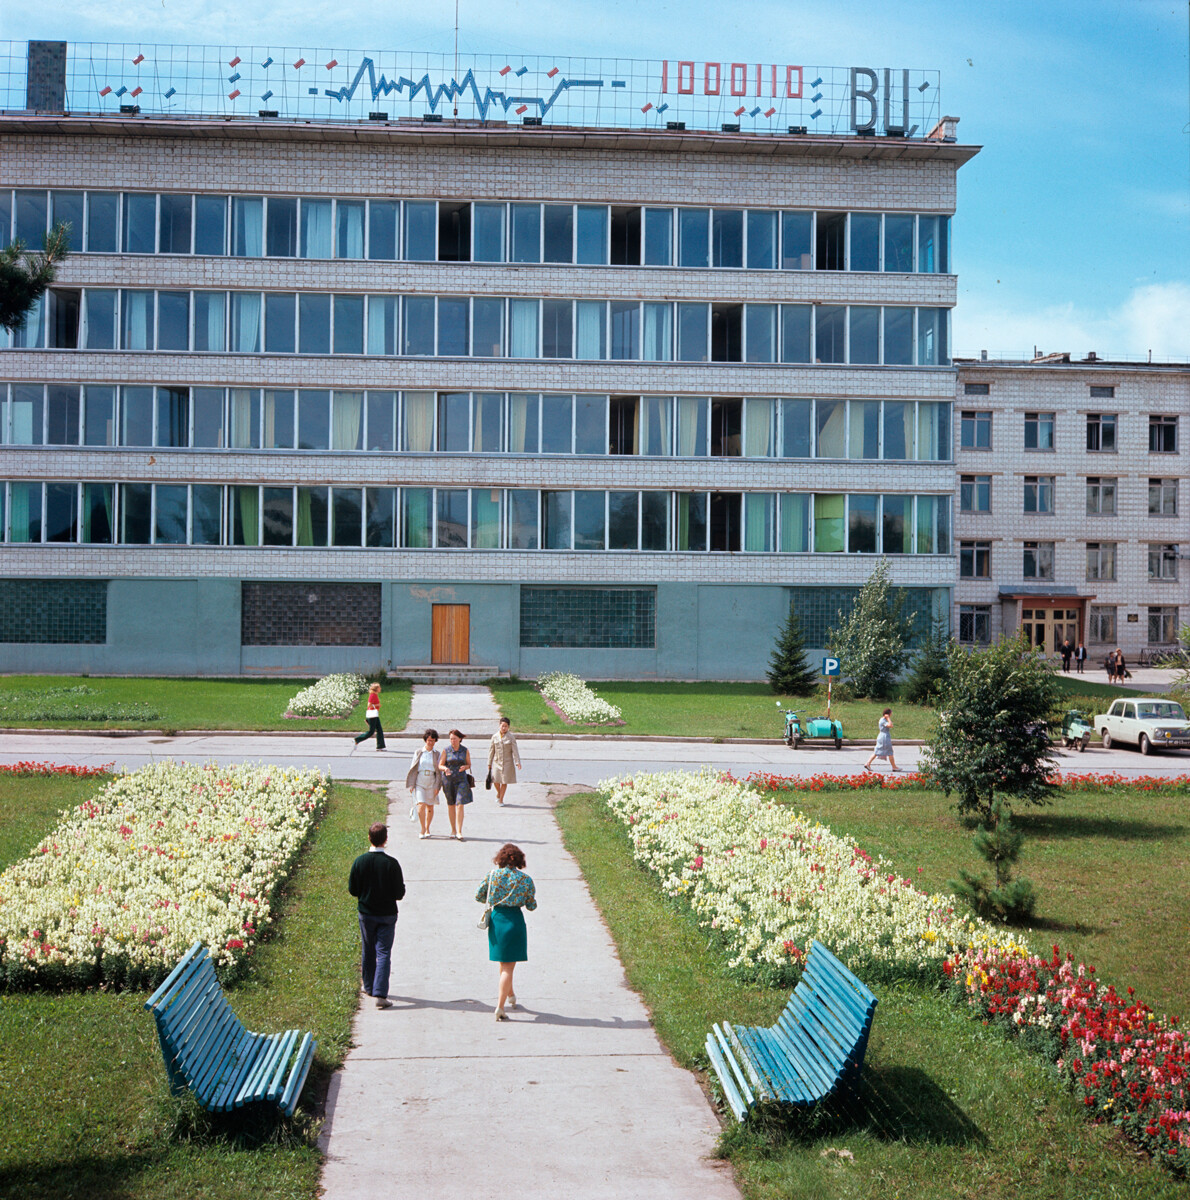 L’edificio del Centro di Informatica della filiale siberiana dell’Accademia Sovietica delle Scienze ad Akademgorodok, 1977

